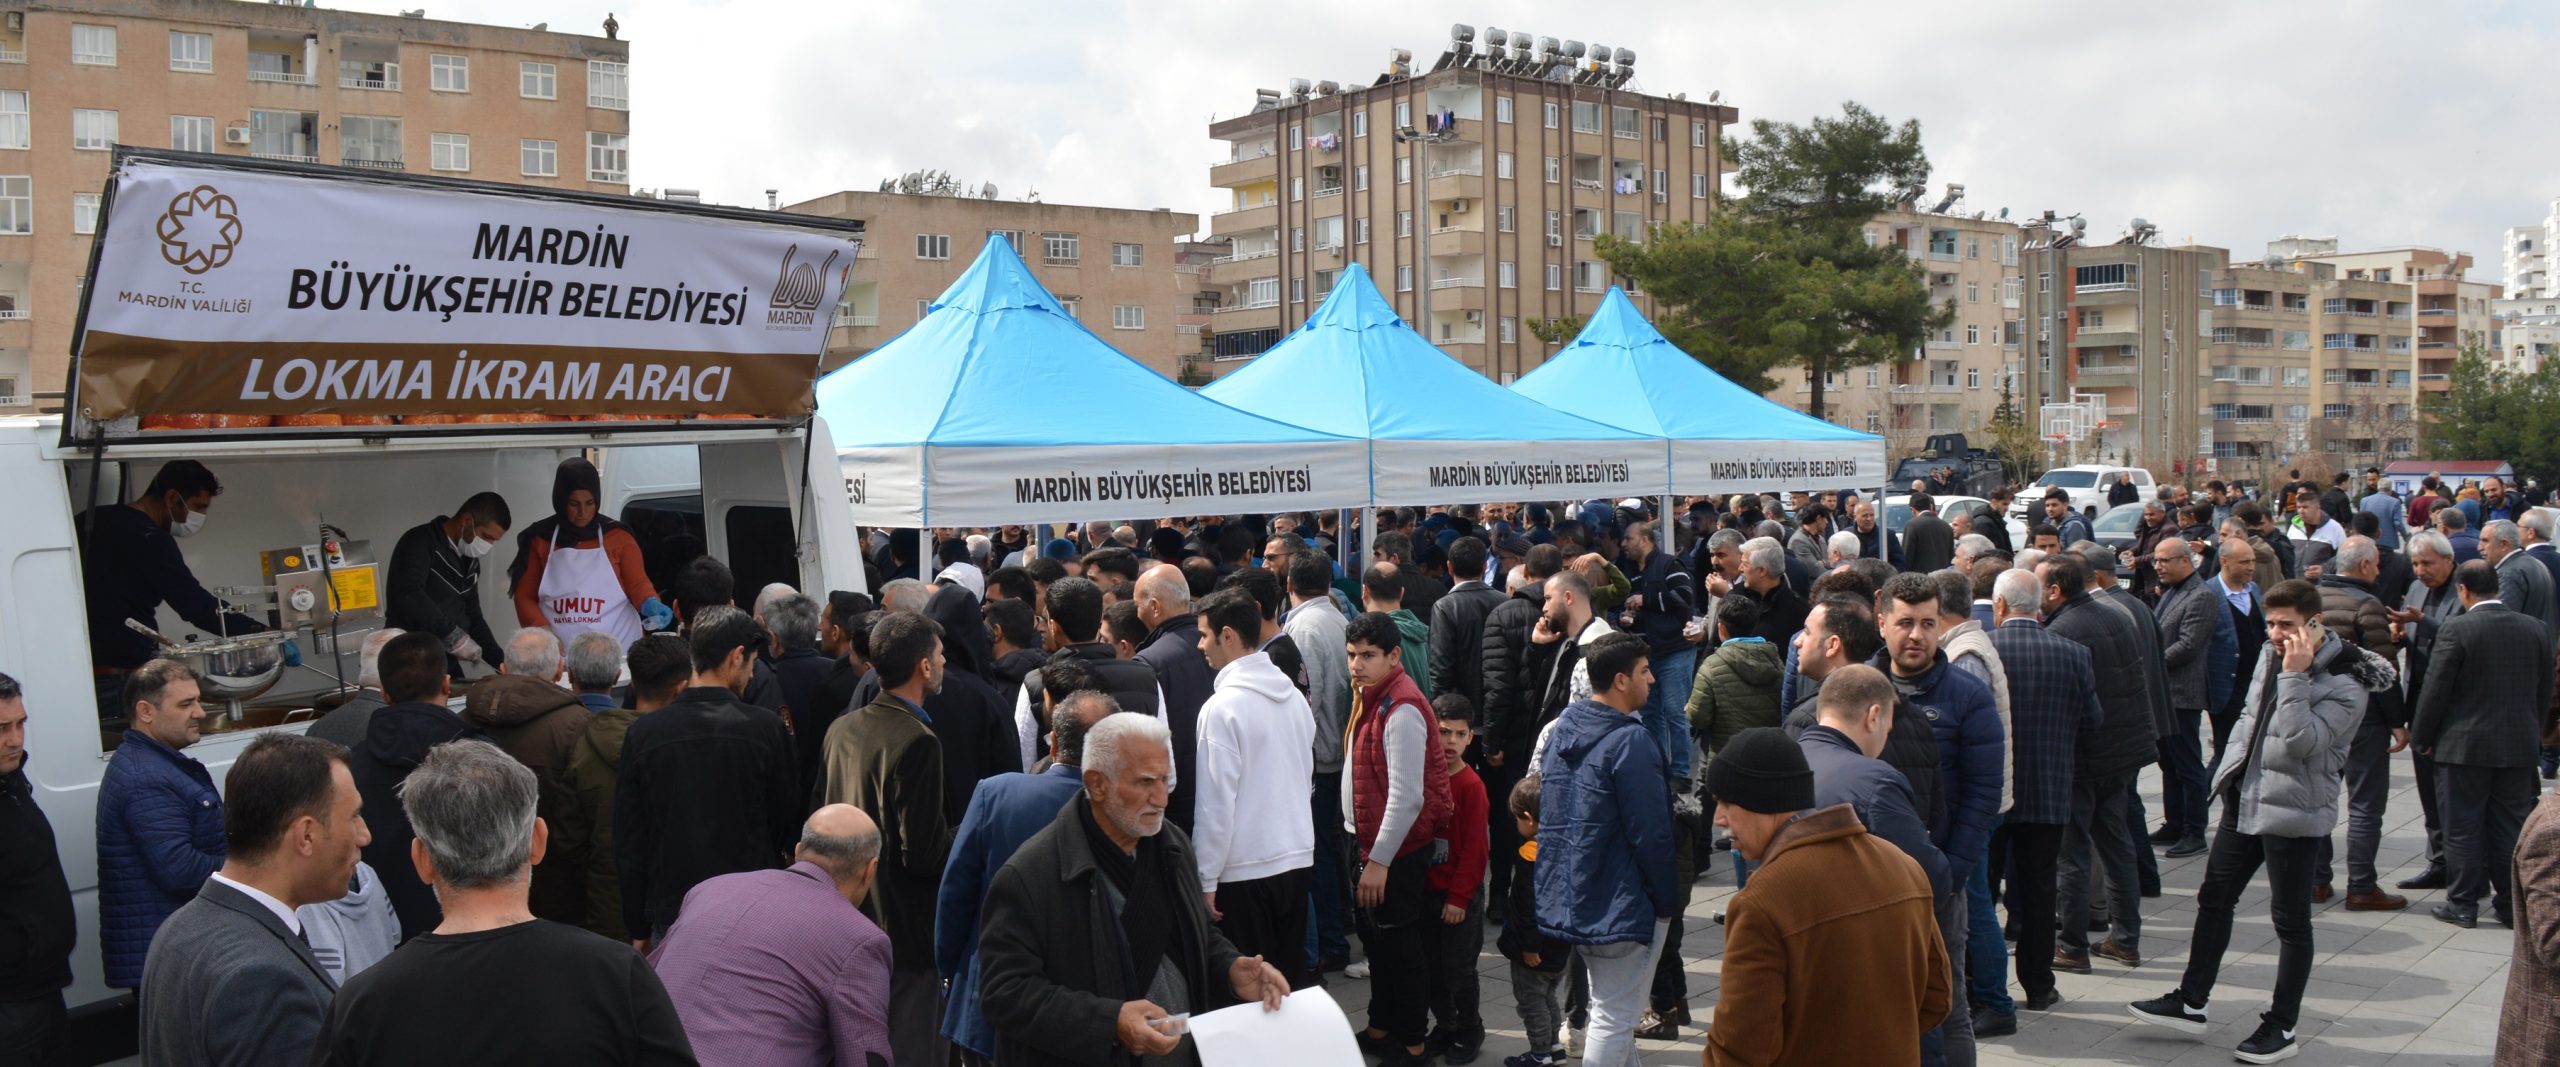 Mardin’de Çanakkale ve deprem şehitleri için lokma hayrı yapıldı